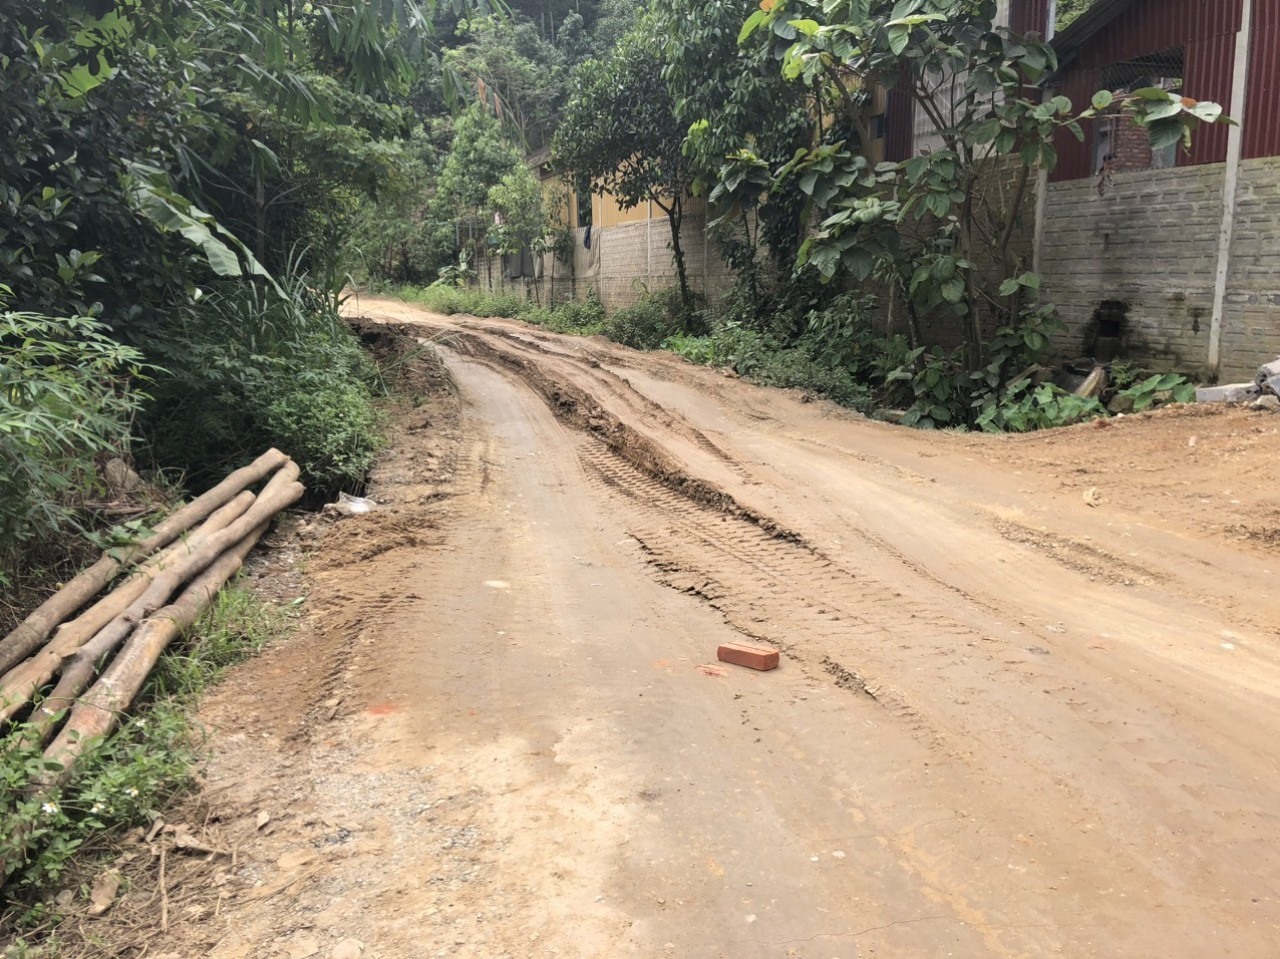 Đường đi làm mỗi ngày của chị Thuý Vân. 10km thì mất khoảng 7km đường xấu, chưa kể ngày mưa to nước ngập không biết lối nào để đi. Ảnh: Nhân vật cung cấp.